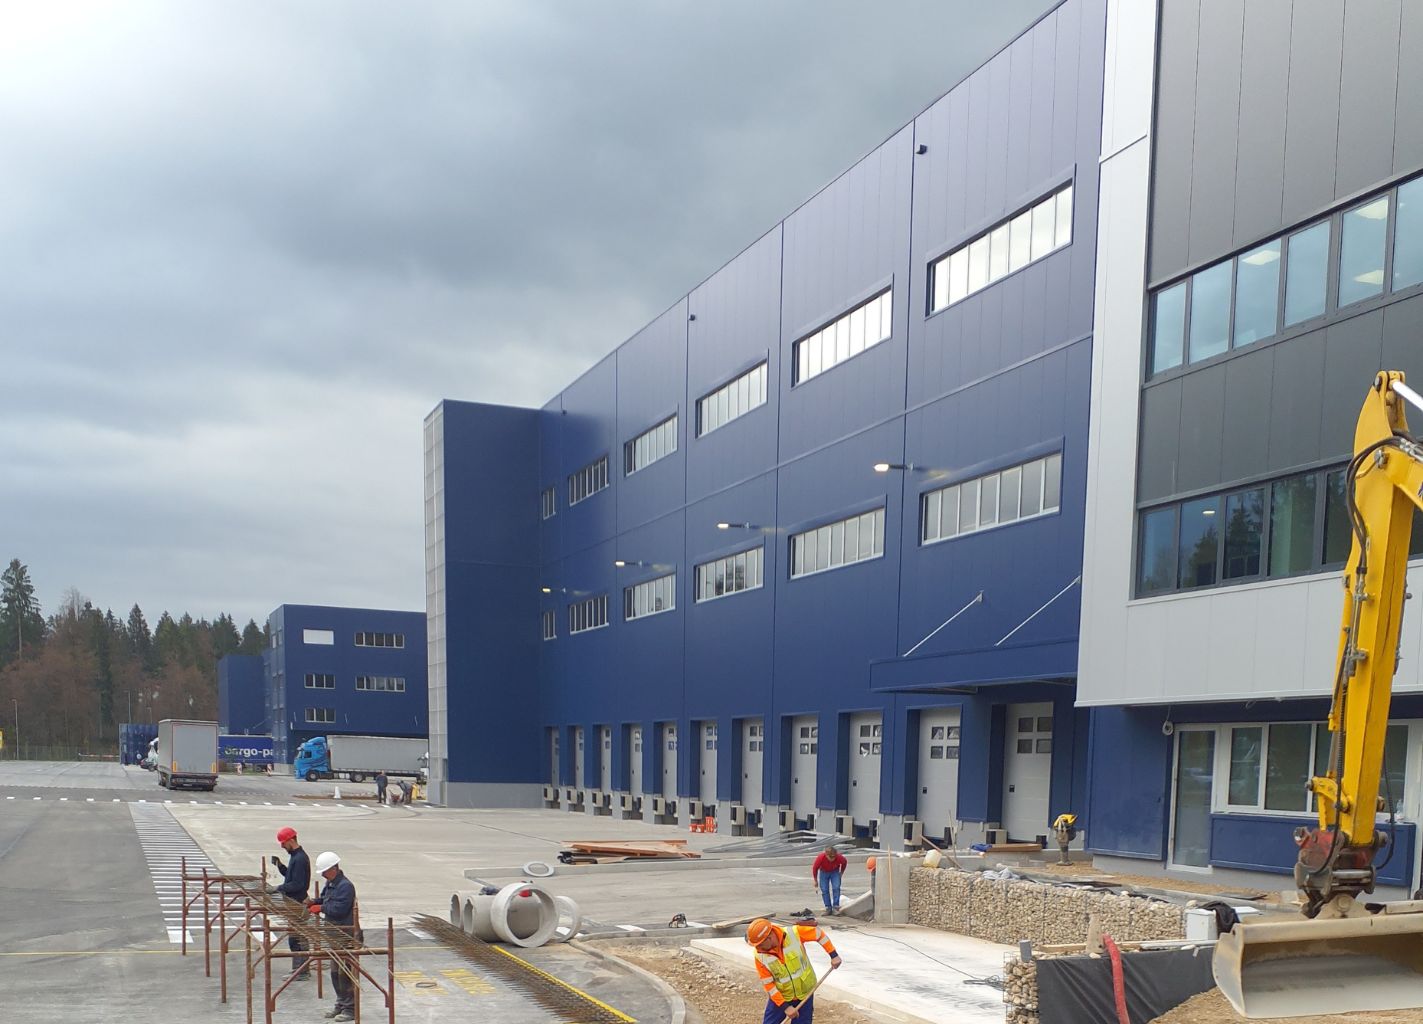 Logistični center cargo-partner, Brnik - 2. faza - November 2022